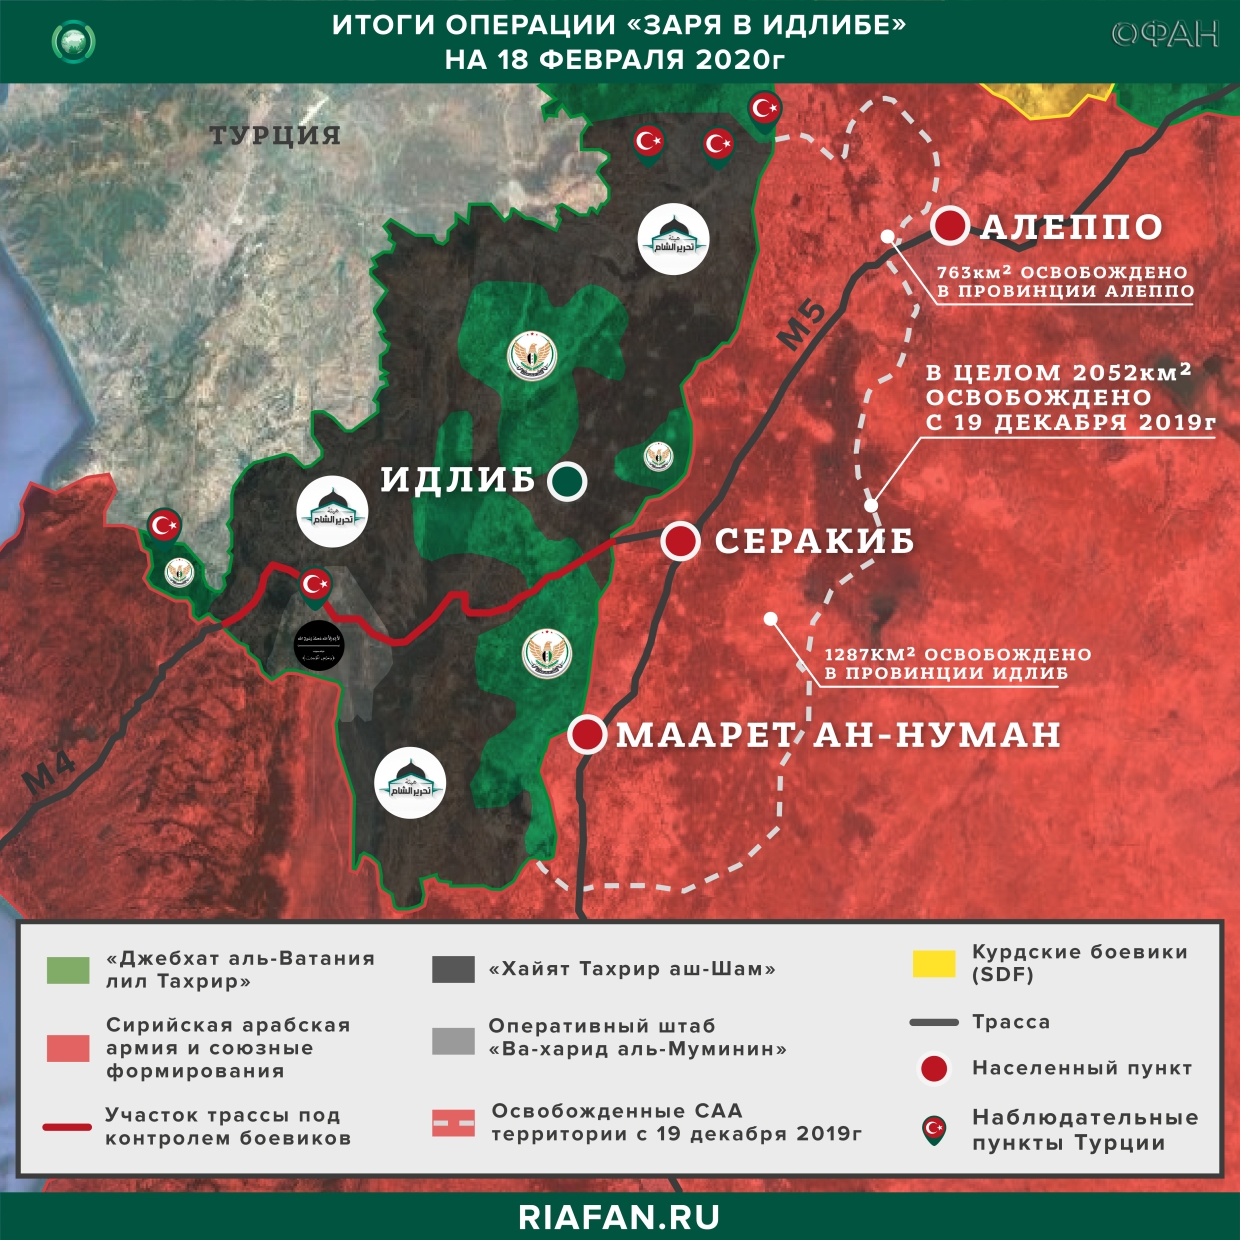 Армия Сирии таранит оборону боевиков на юге Идлиба, чтобы освободить трассу М4